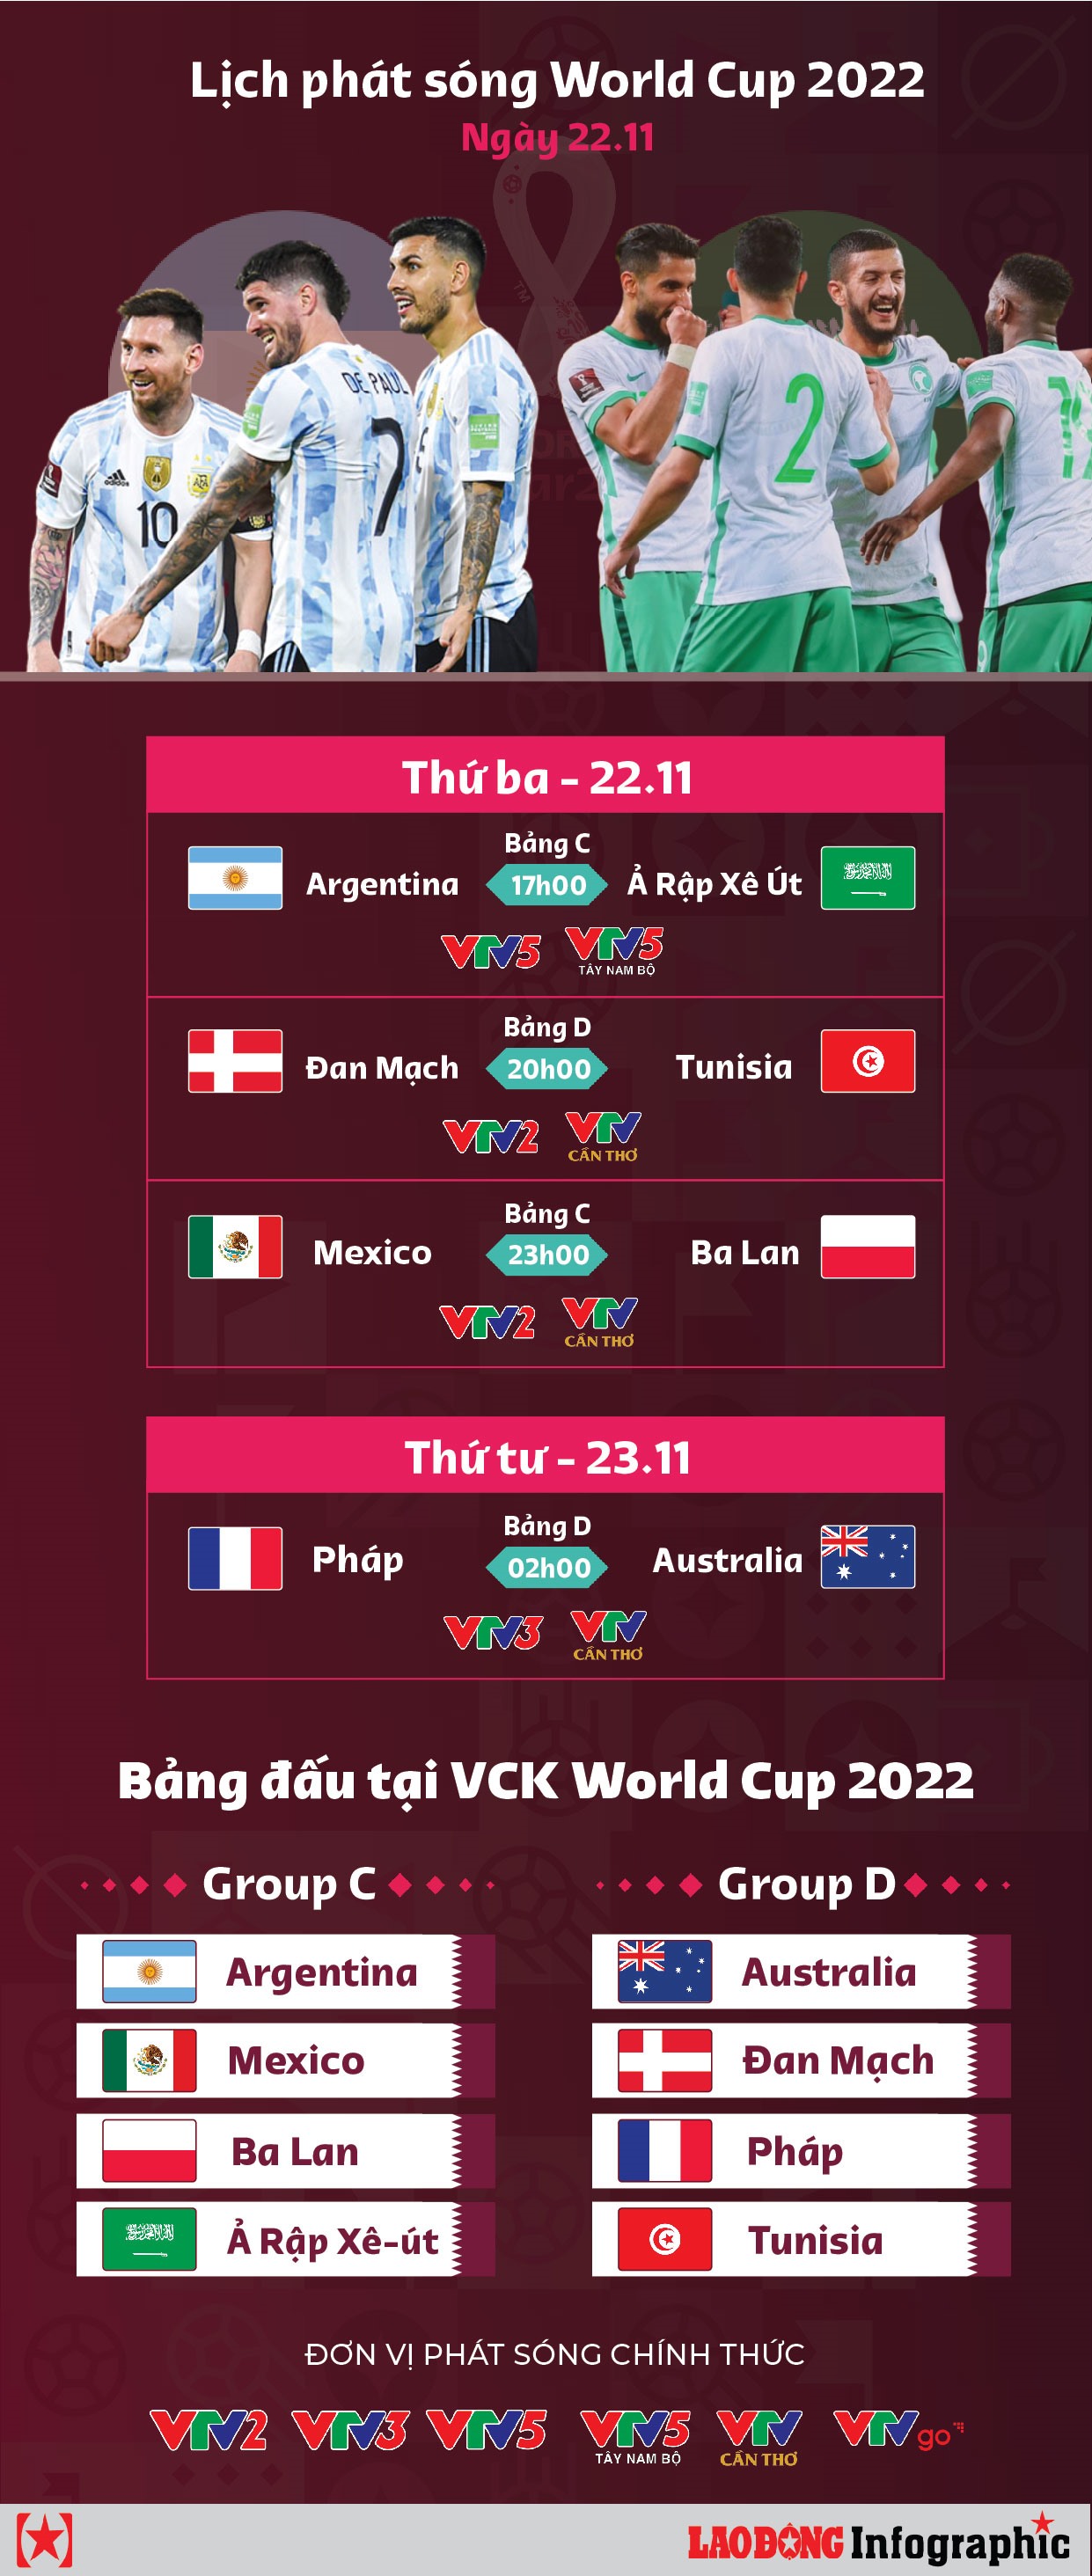 Xem Trực Tiếp Các Trận Đấu Tại World Cup 2022 Ngày 22.11 Trên Kênh Nào?